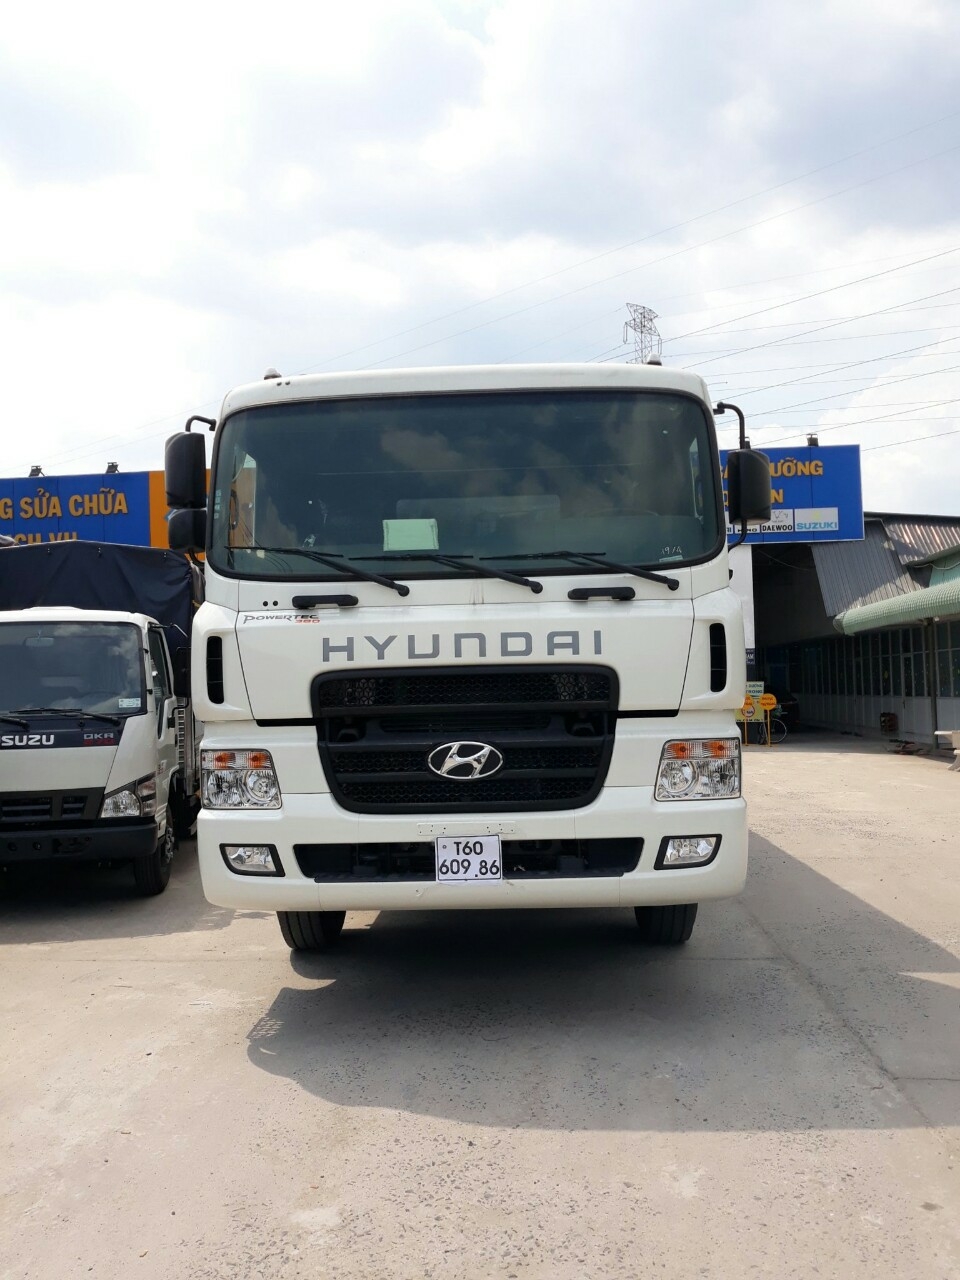 Xe tải HYUNDAI 4 chân hd320 tải 17.5 tấn thùng dài 9.7m - Trả góp